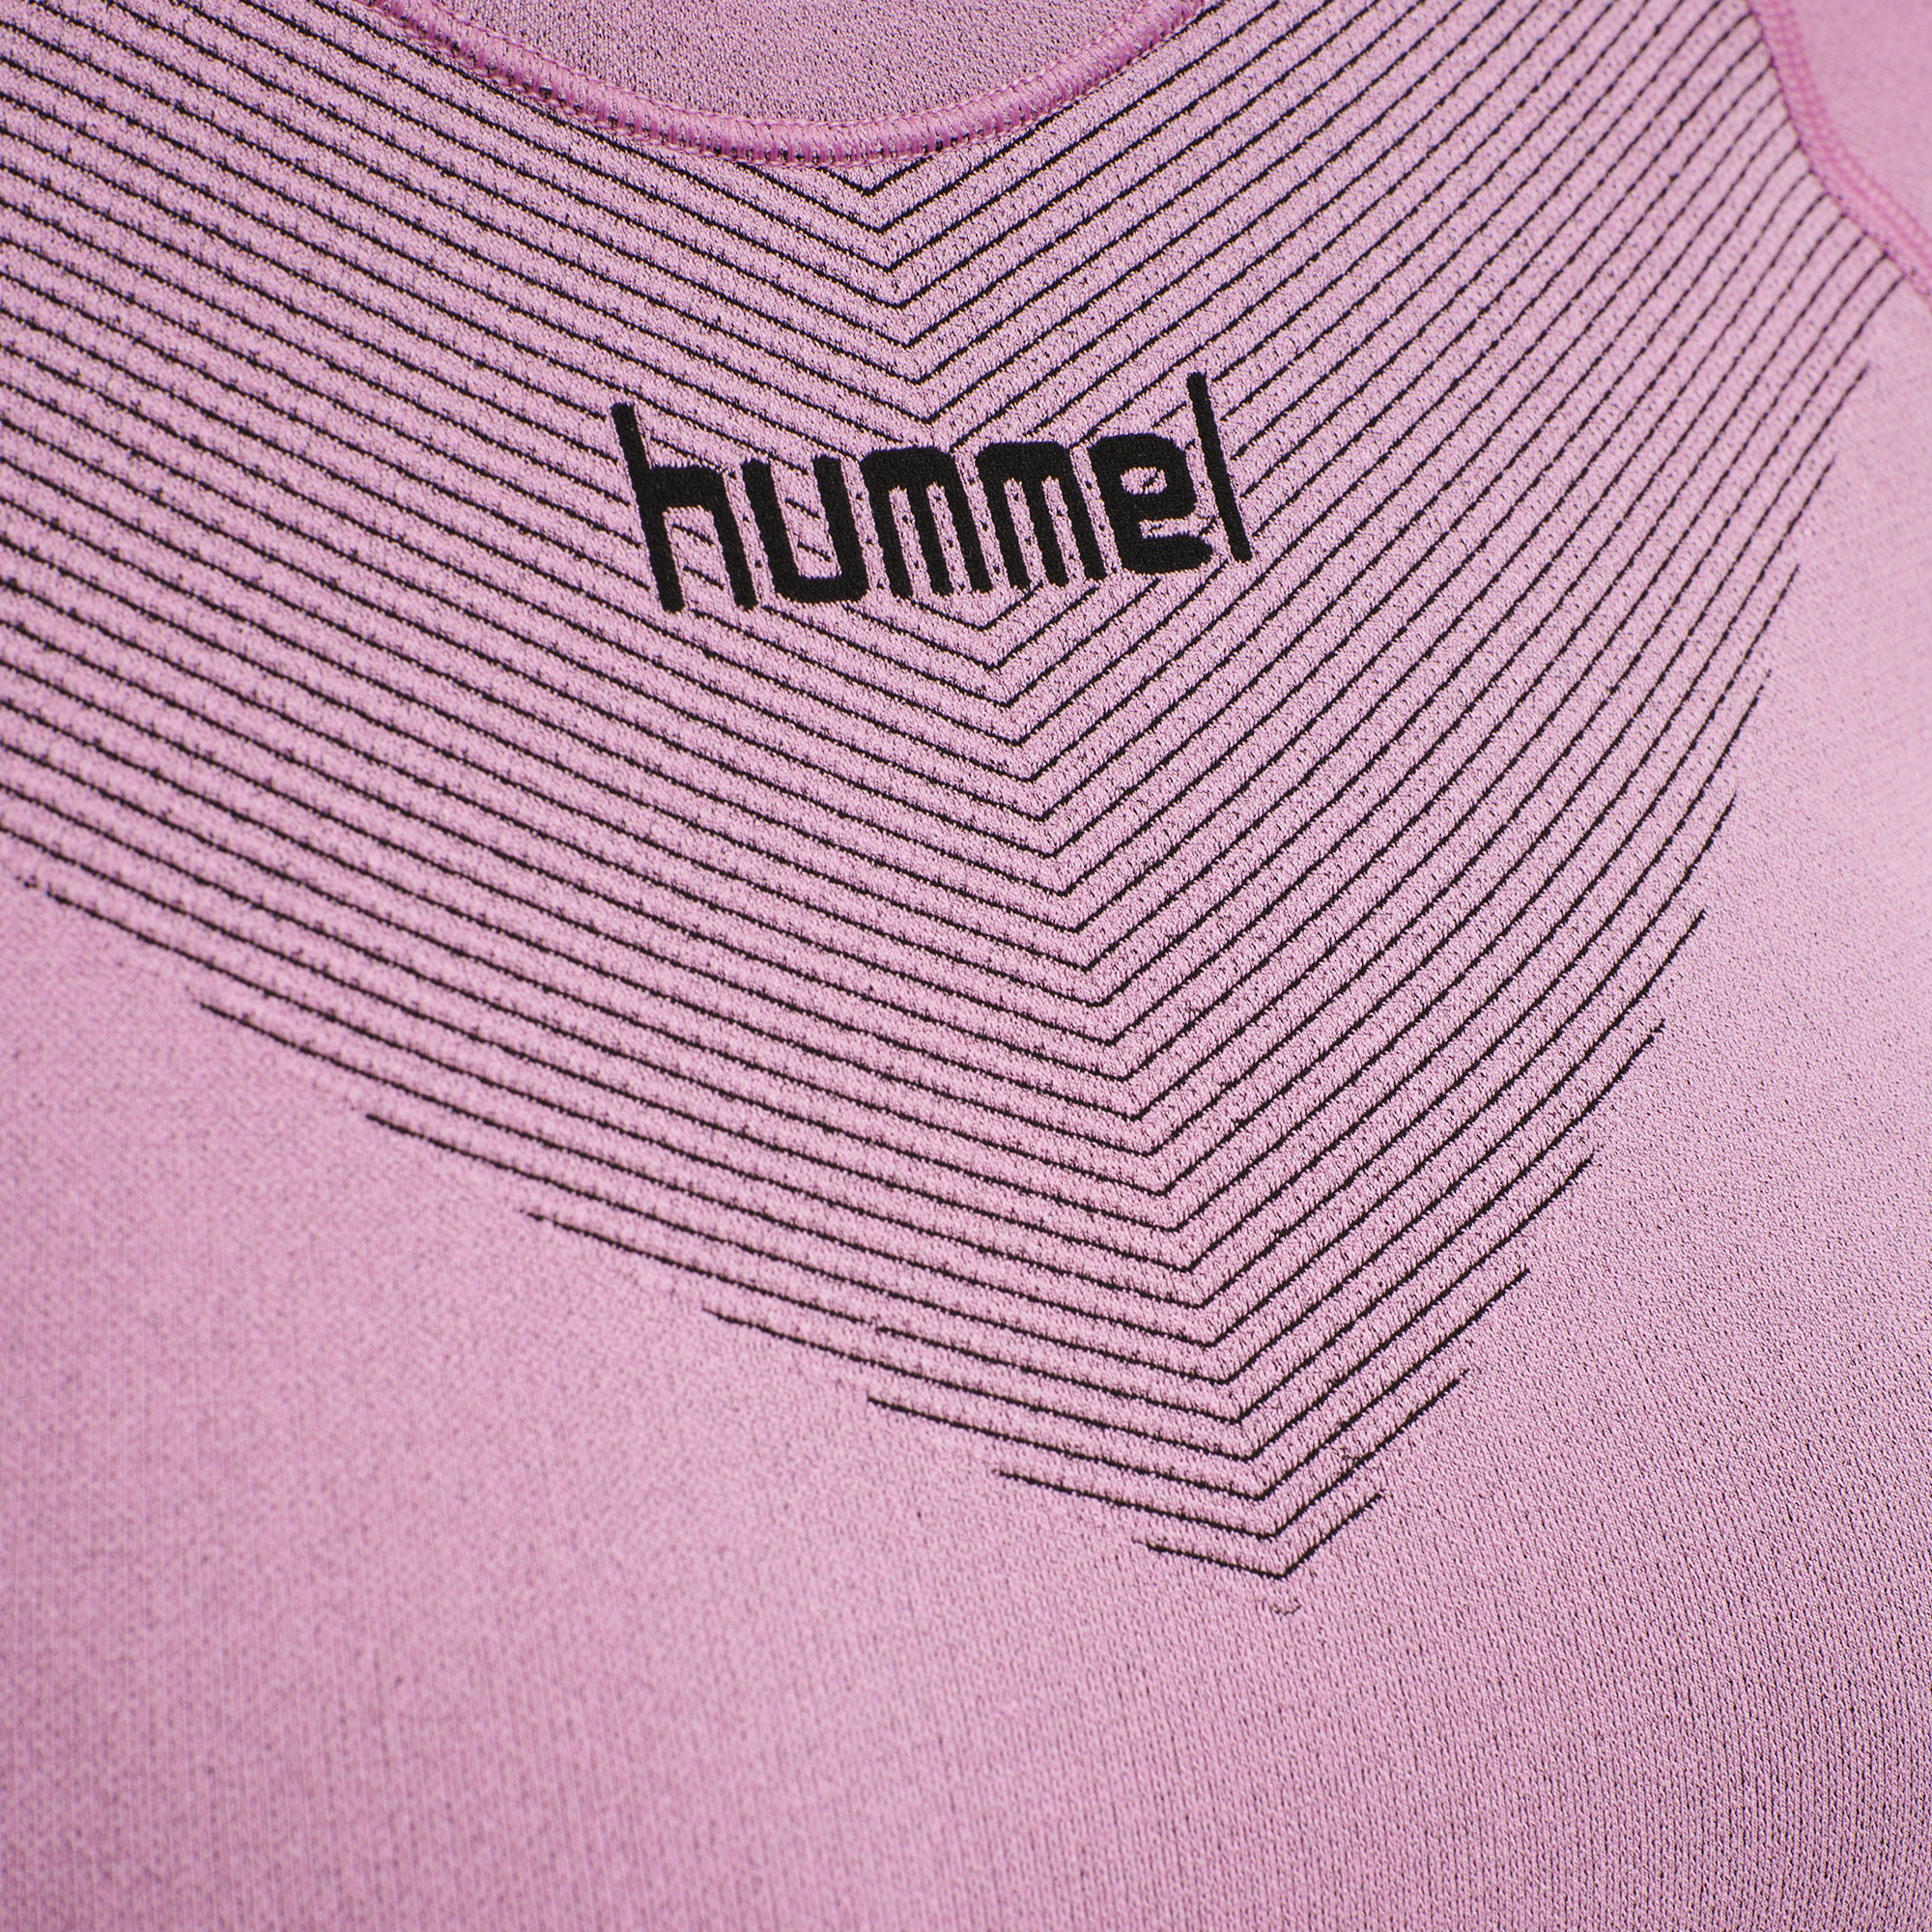 Hummel First Seamless Shortsleeve Jersey Damen